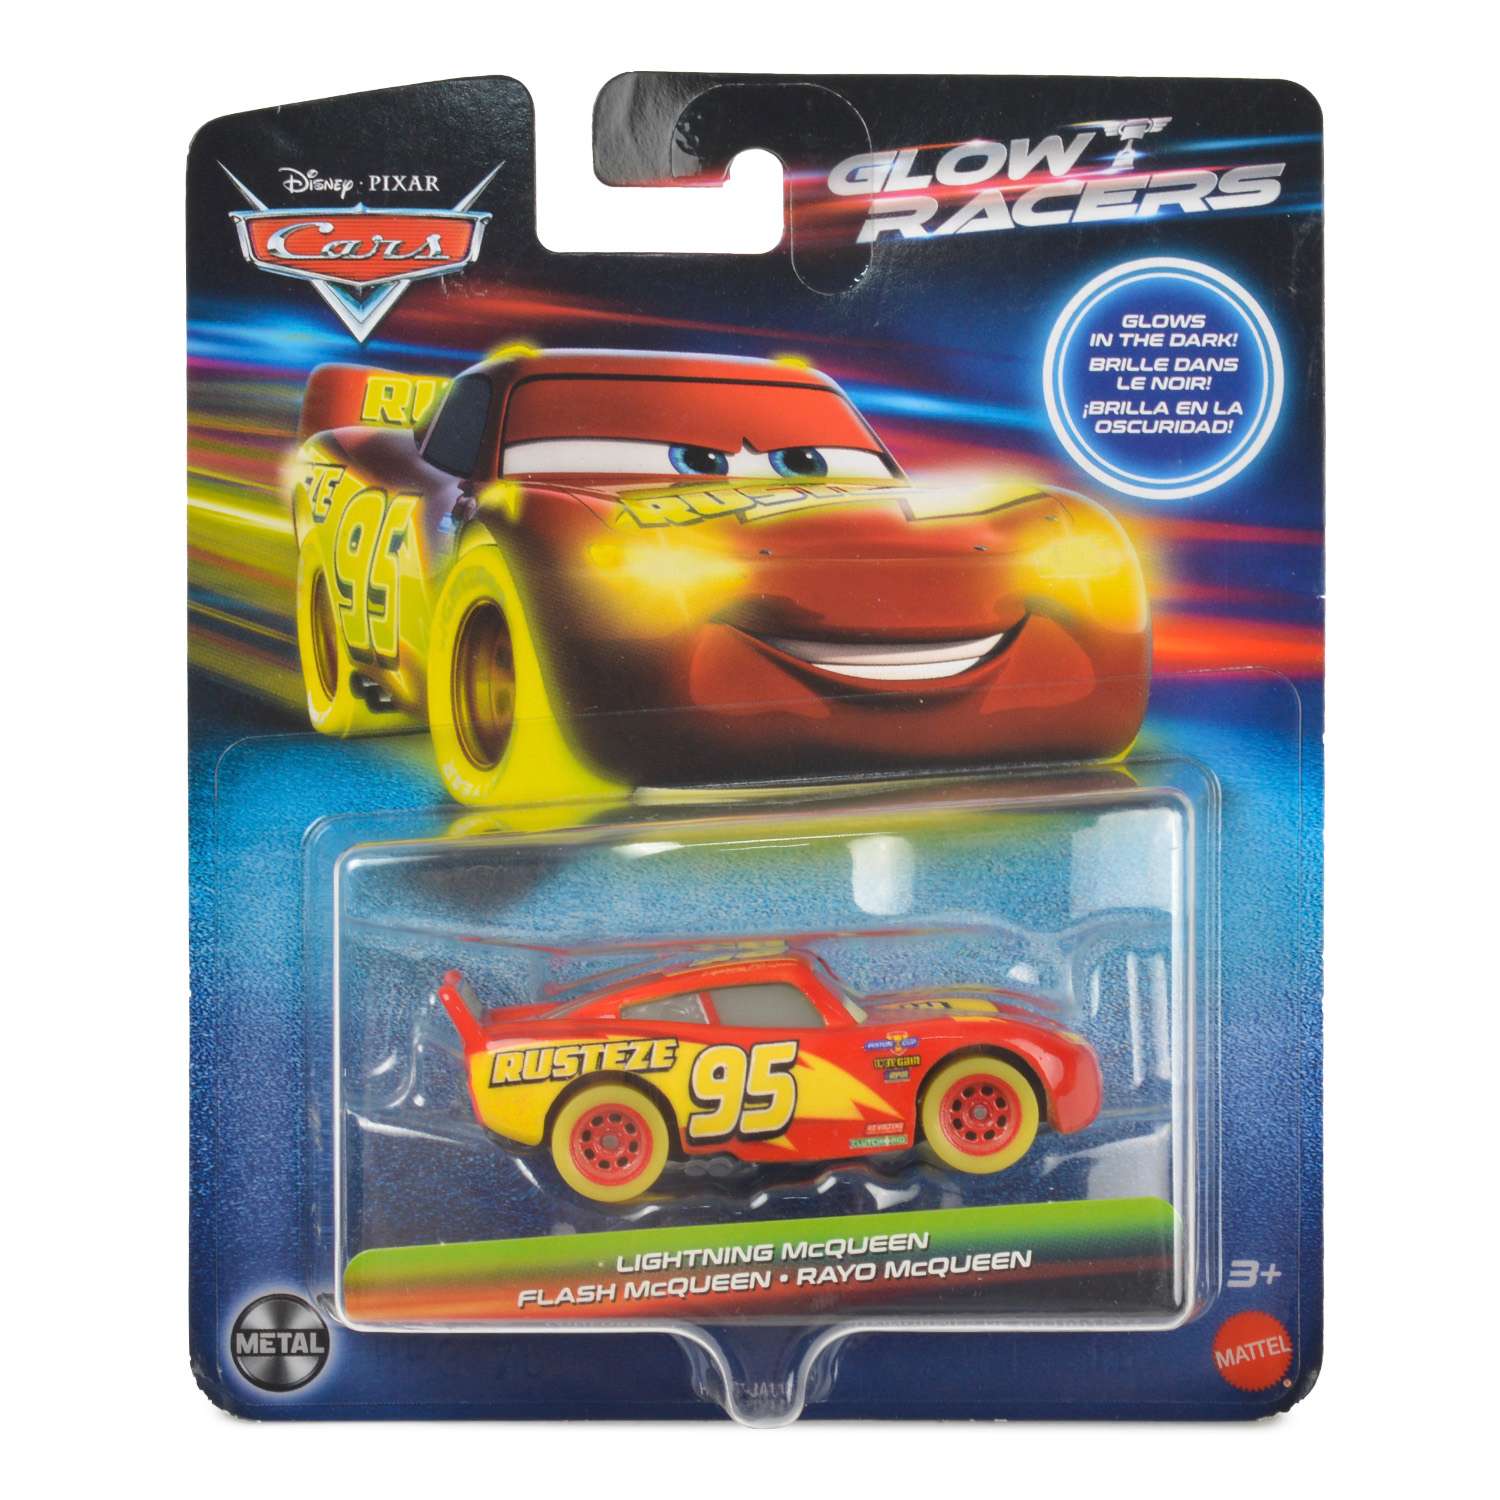 Машина Disney Pixar Cars Glow Racers HPG77 HPG76 - фото 2